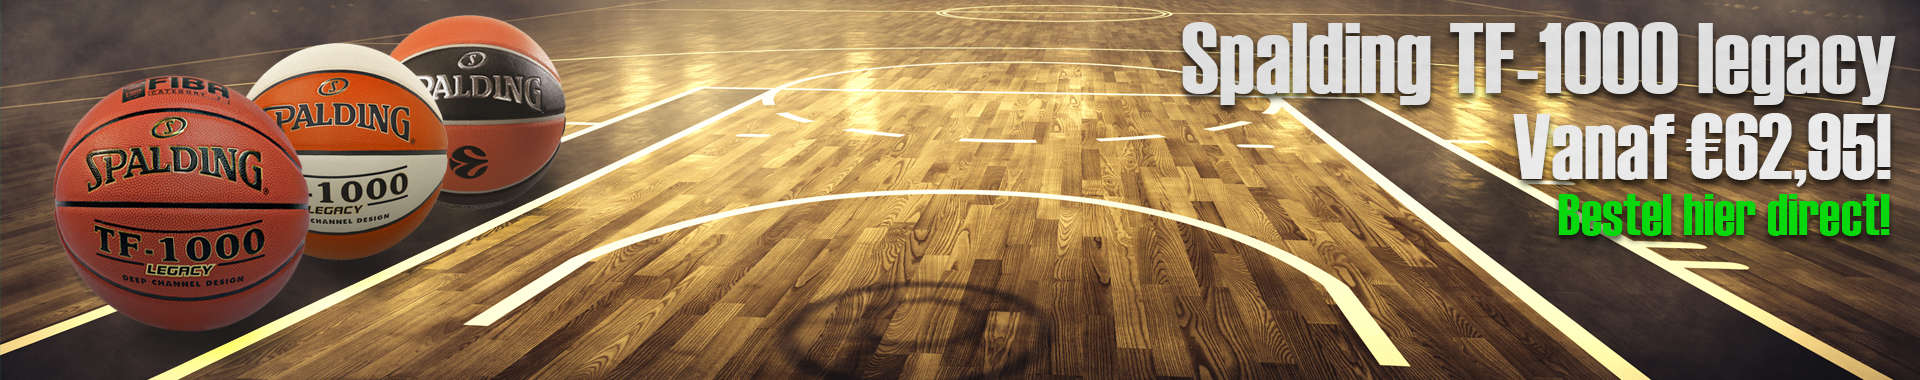 Basketbalshop, voor al je basketbal benodigdheden! - Gameballs